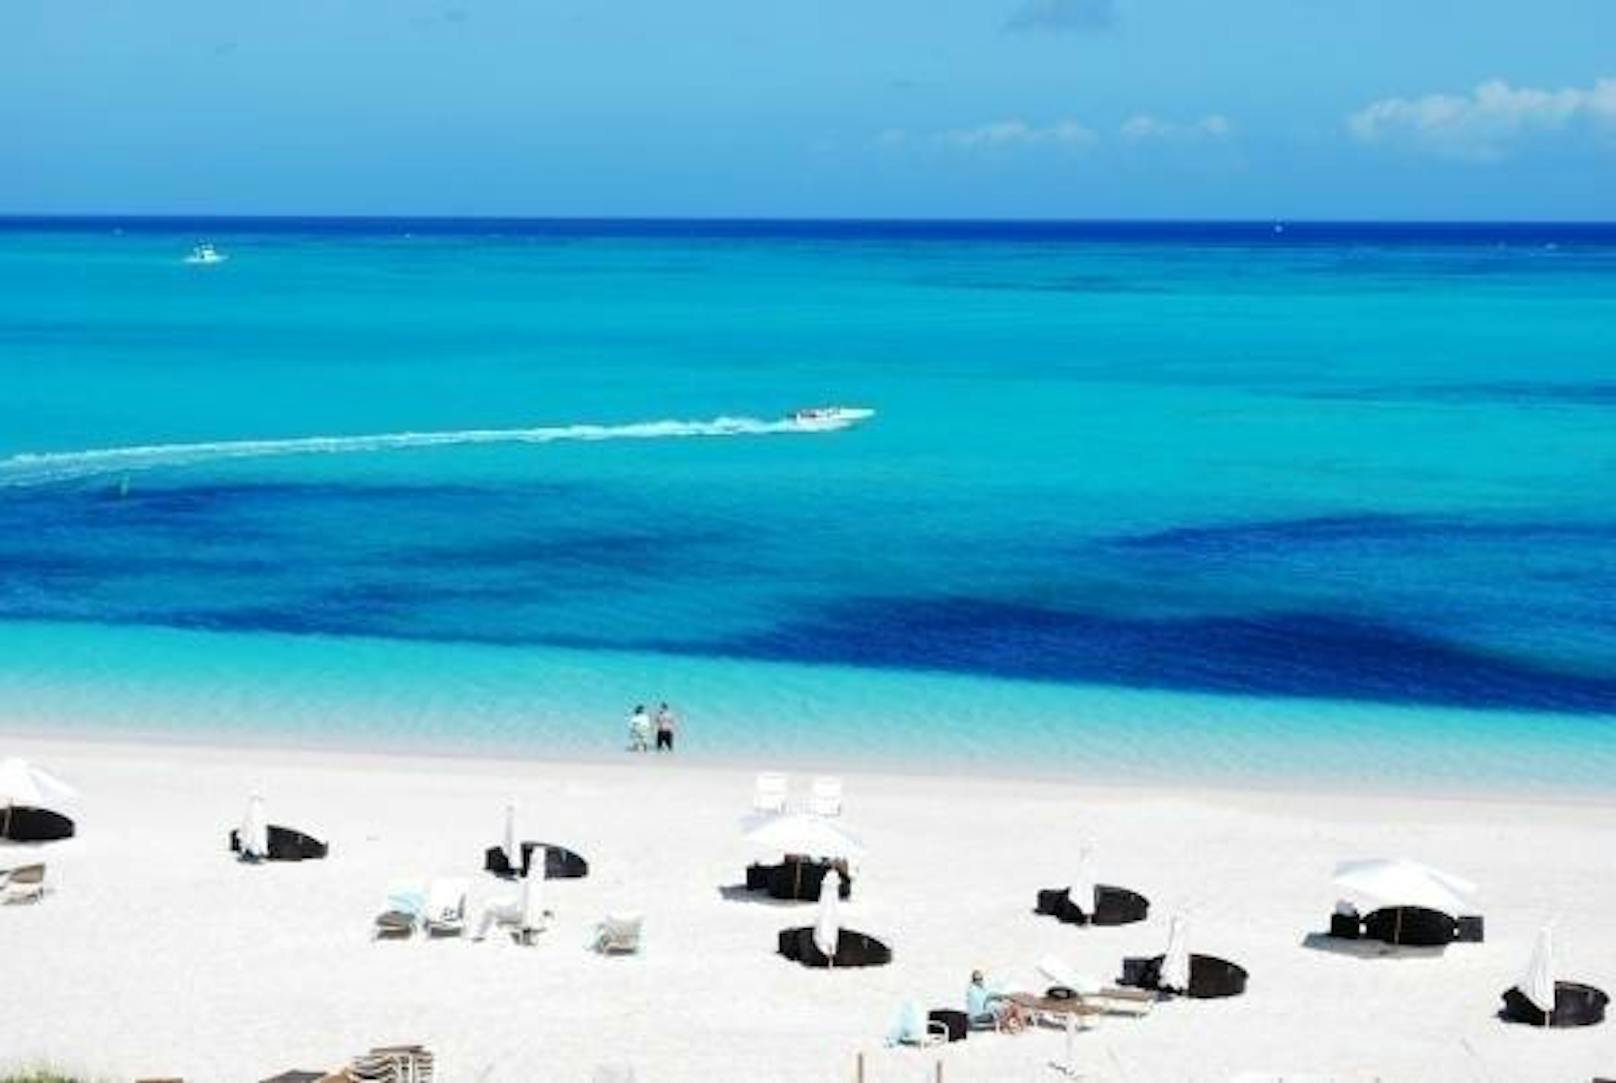 <b>Platz eins: Grace Bay, Providenciales, Turks- und Caicosinseln: </b>Sand bis zum Horizont und von Ende Januar bis Anfang April nordatlantische Buckelwale, die sich beobachten lassen. Dafür gibt es fünf Sterne: "Der Strand ist ewig lang, ganz sauber und superfein."